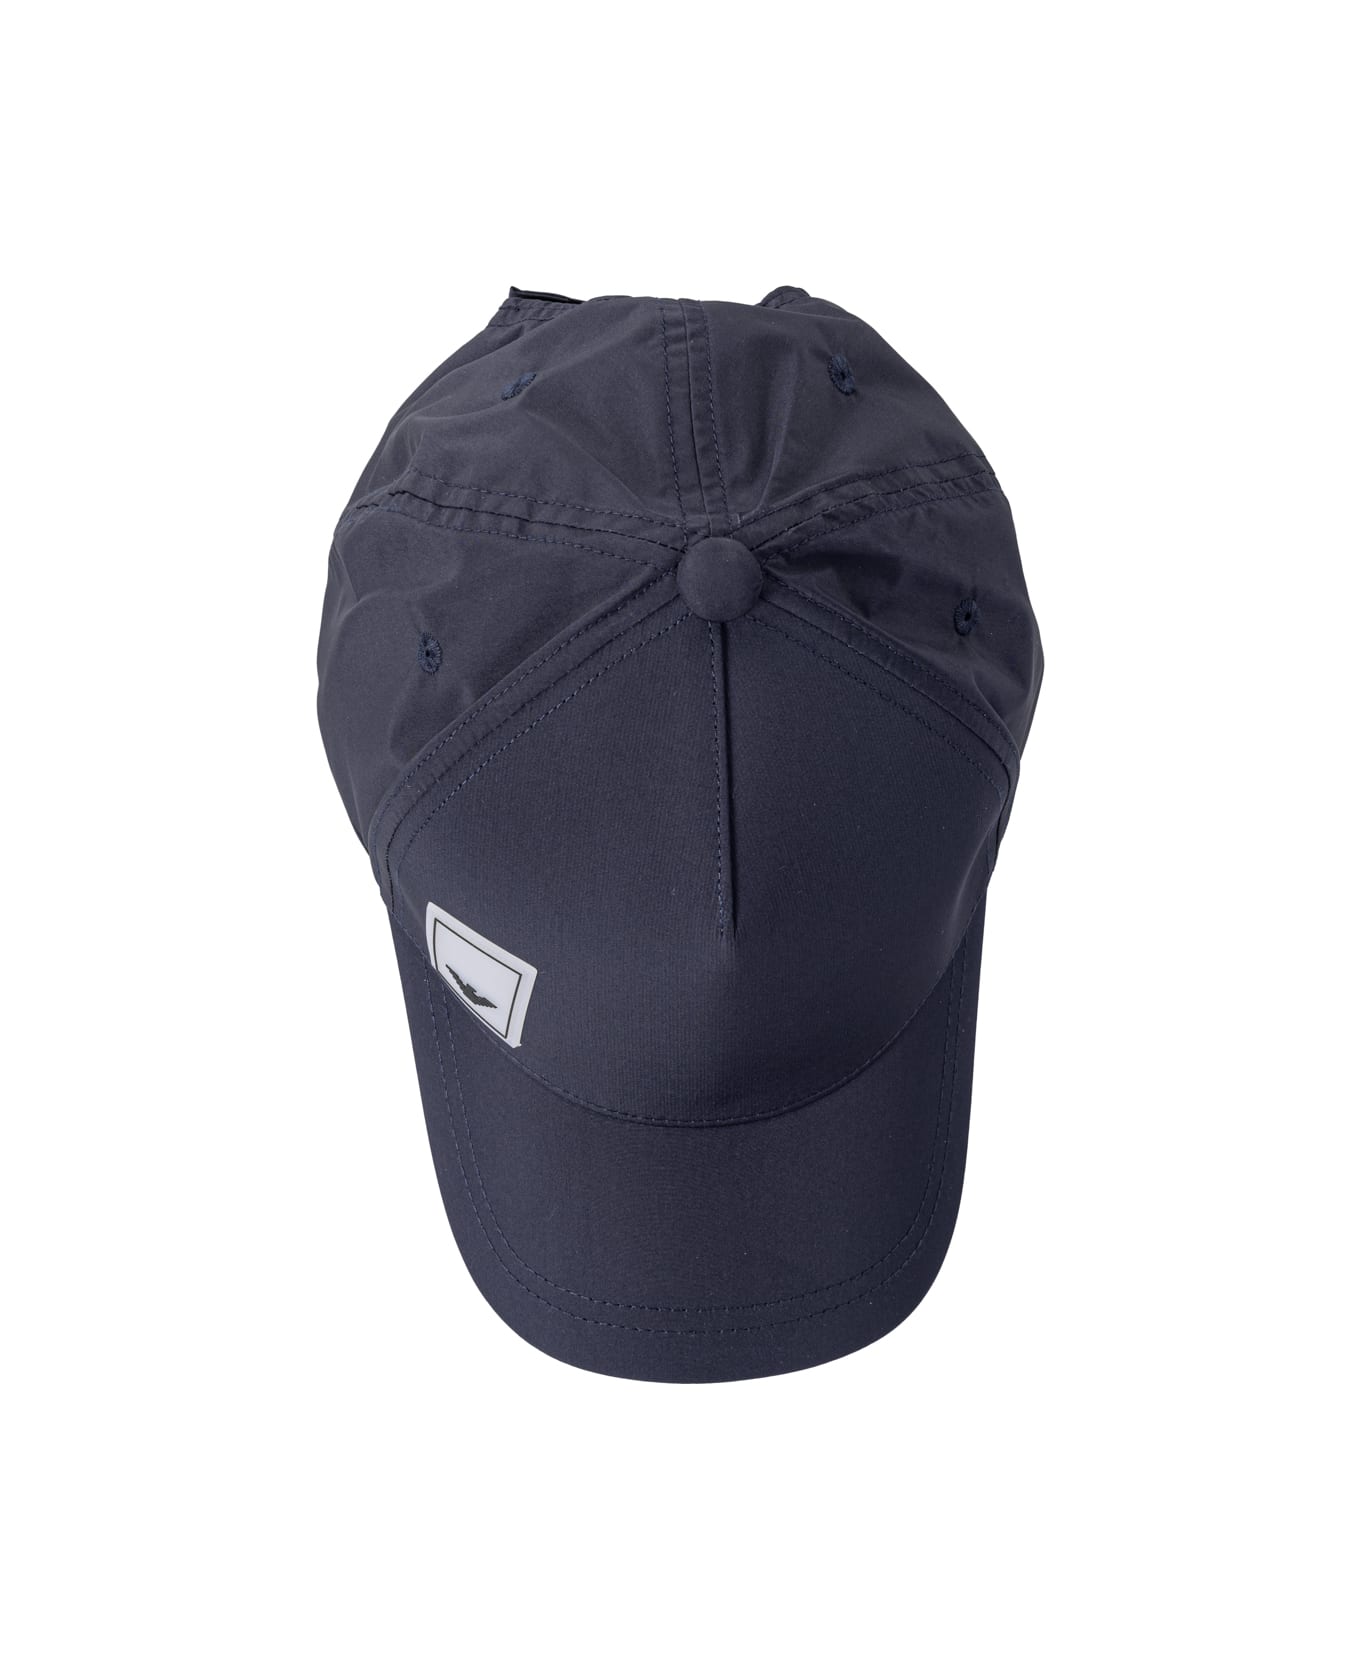 Emporio Armani Hats Blue - Blue 帽子